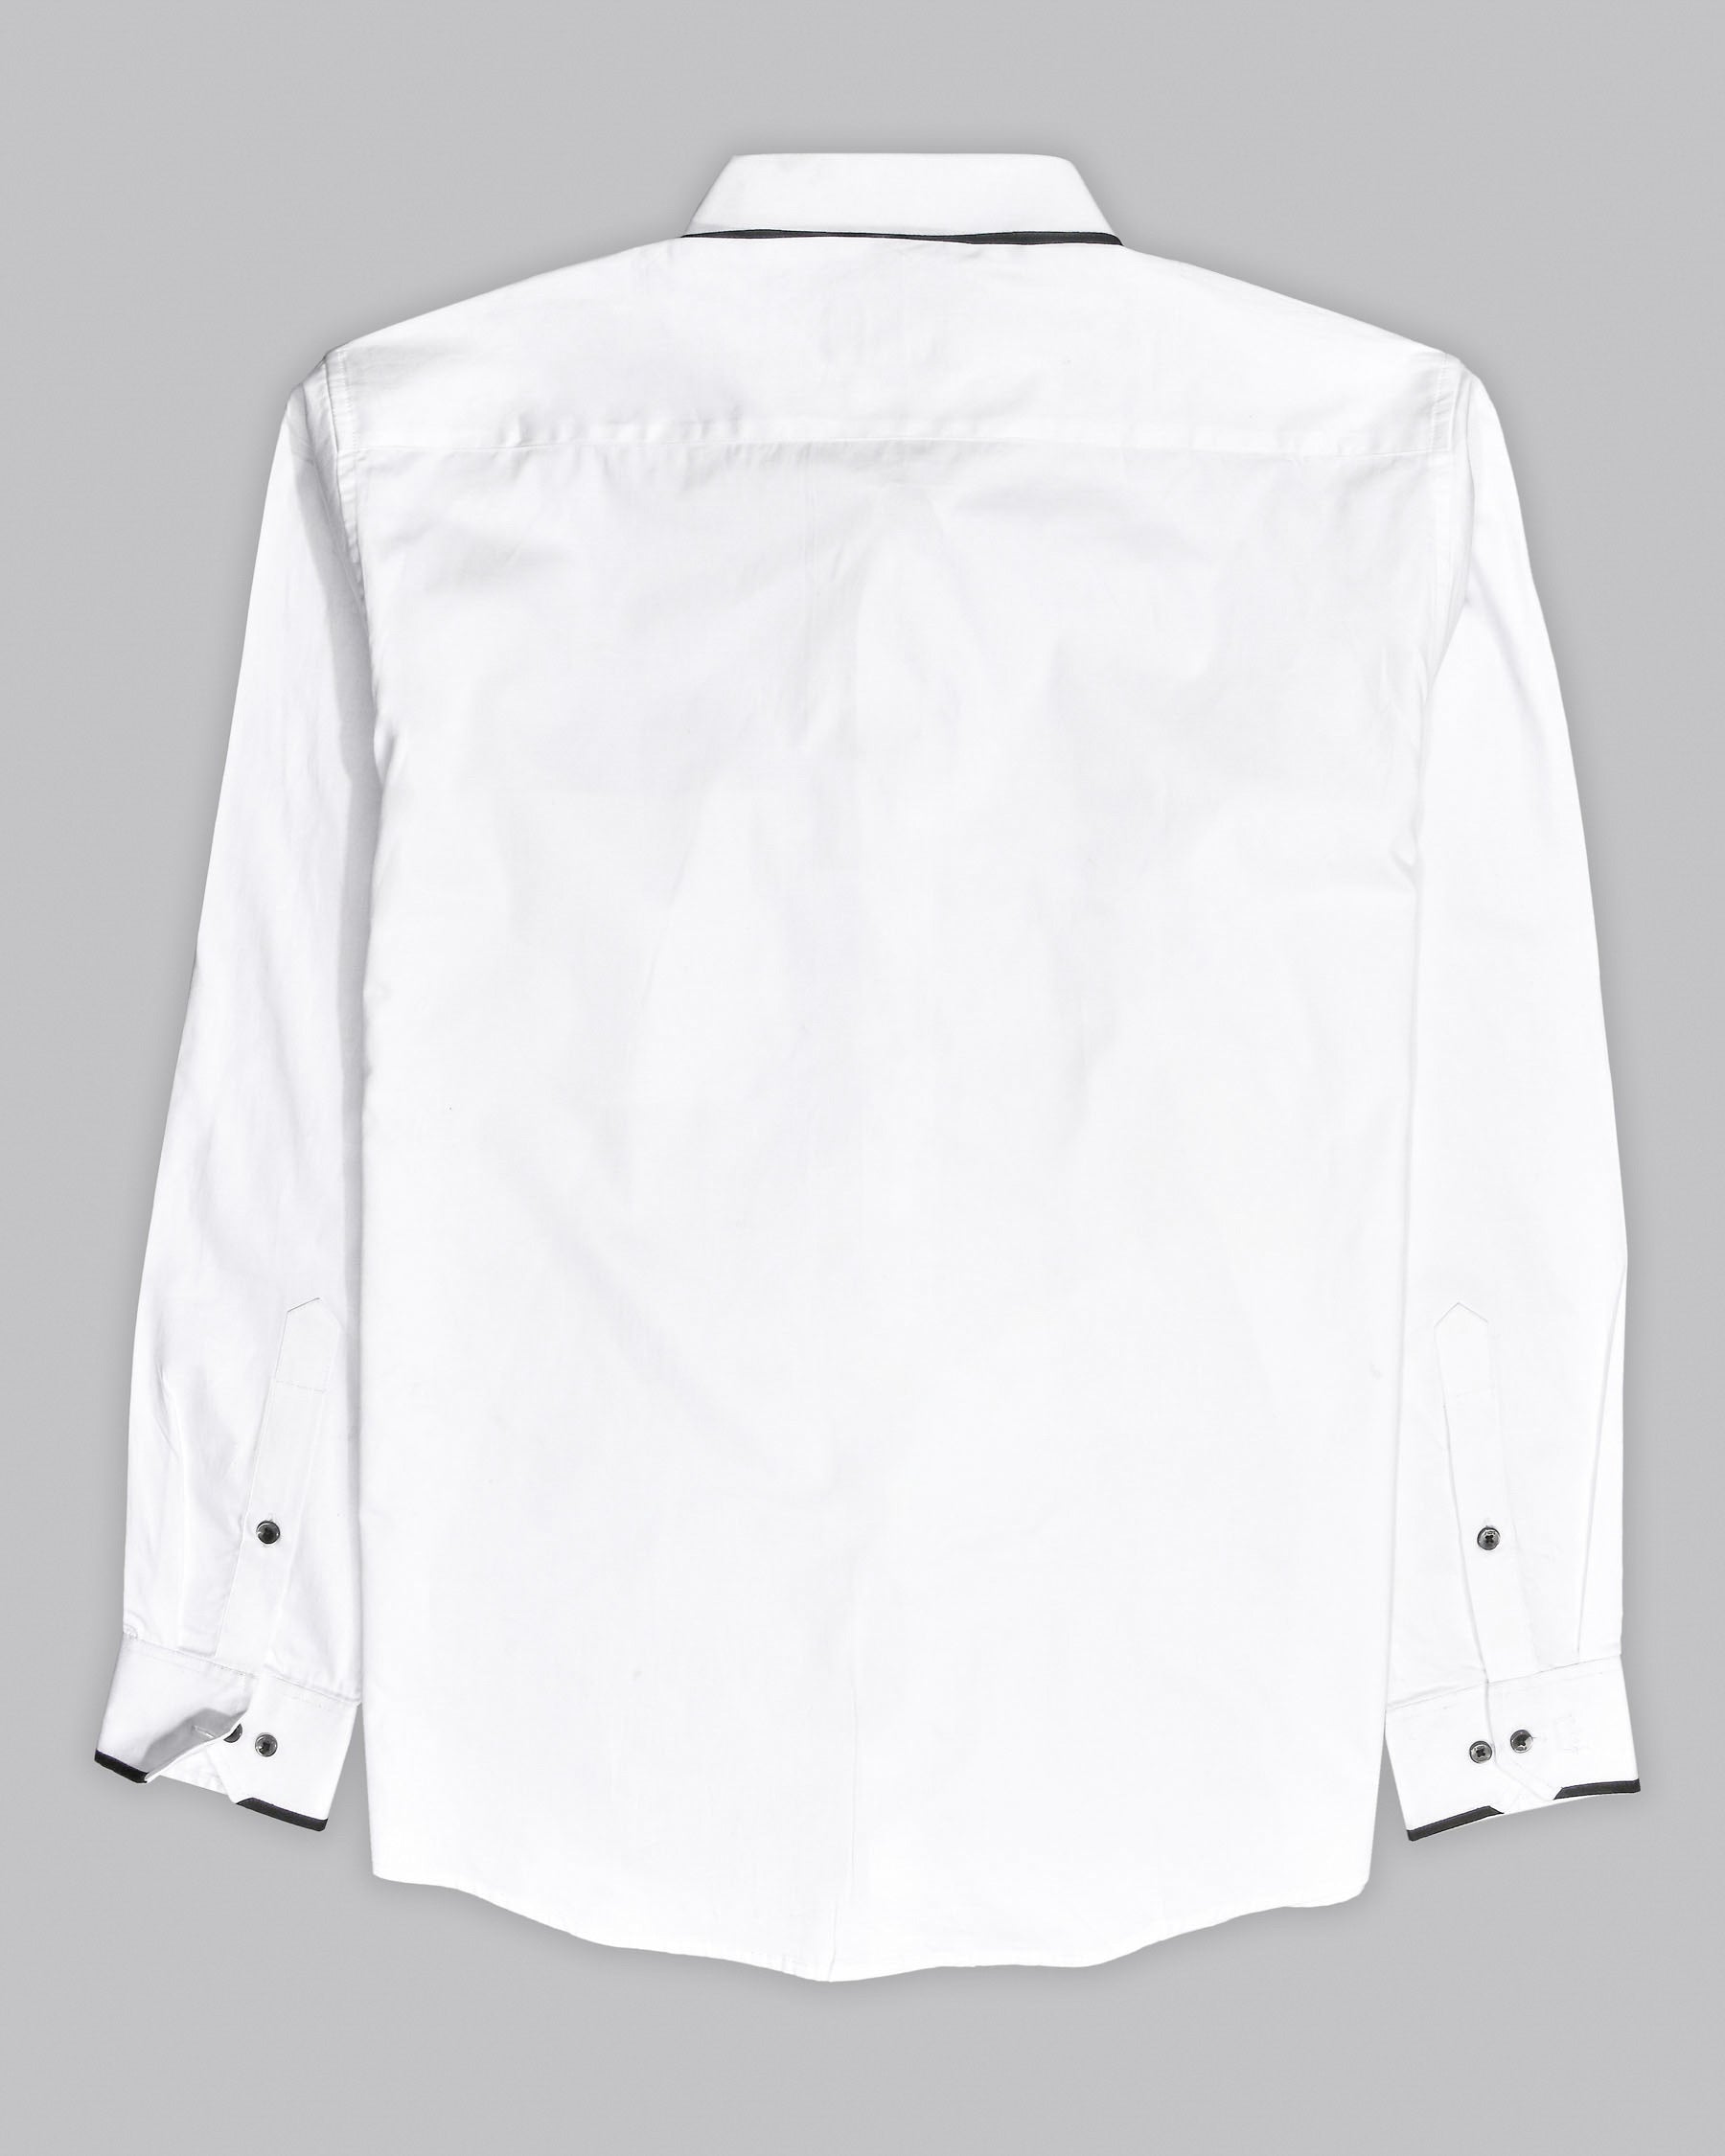 Bright White Subtle Sheen Super Soft Premium Cotton Designer Shirt 4379-BLK-P33-38, 4379-BLK-P33-H-38, 4379-BLK-P33-39, 4379-BLK-P33-H-39, 4379-BLK-P33-40, 4379-BLK-P33-H-40, 4379-BLK-P33-42, 4379-BLK-P33-H-42, 4379-BLK-P33-44, 4379-BLK-P33-H-44, 4379-BLK-P33-46, 4379-BLK-P33-H-46, 4379-BLK-P33-48, 4379-BLK-P33-H-48, 4379-BLK-P33-50, 4379-BLK-P33-H-50, 4379-BLK-P33-52, 4379-BLK-P33-H-52